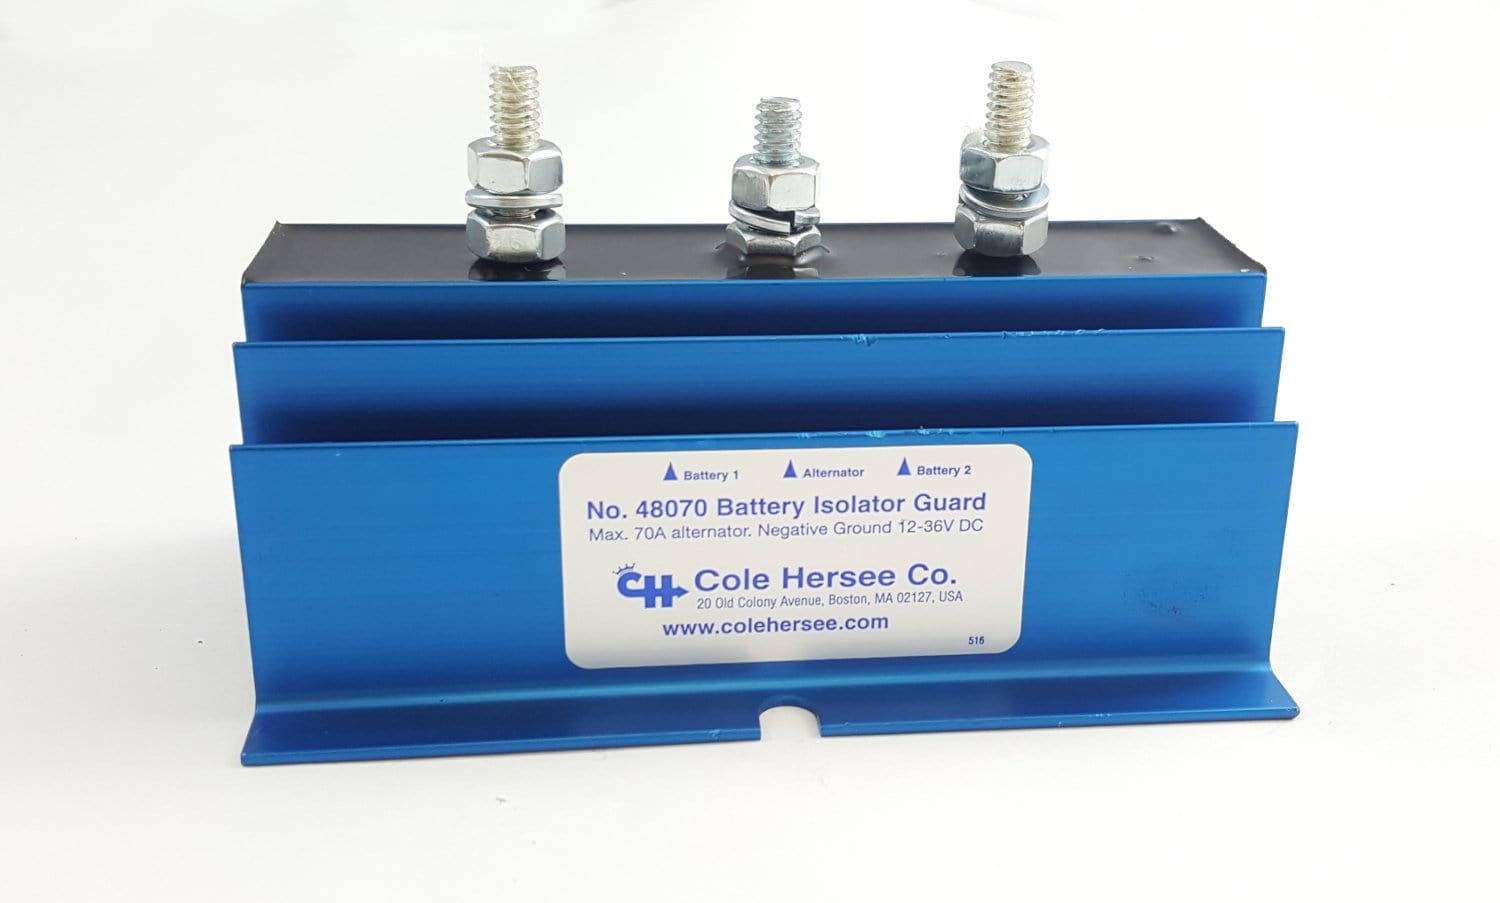 Wasserdichter Behälter für 70 Ah-Batterie BS001 - Comptoir Nautique